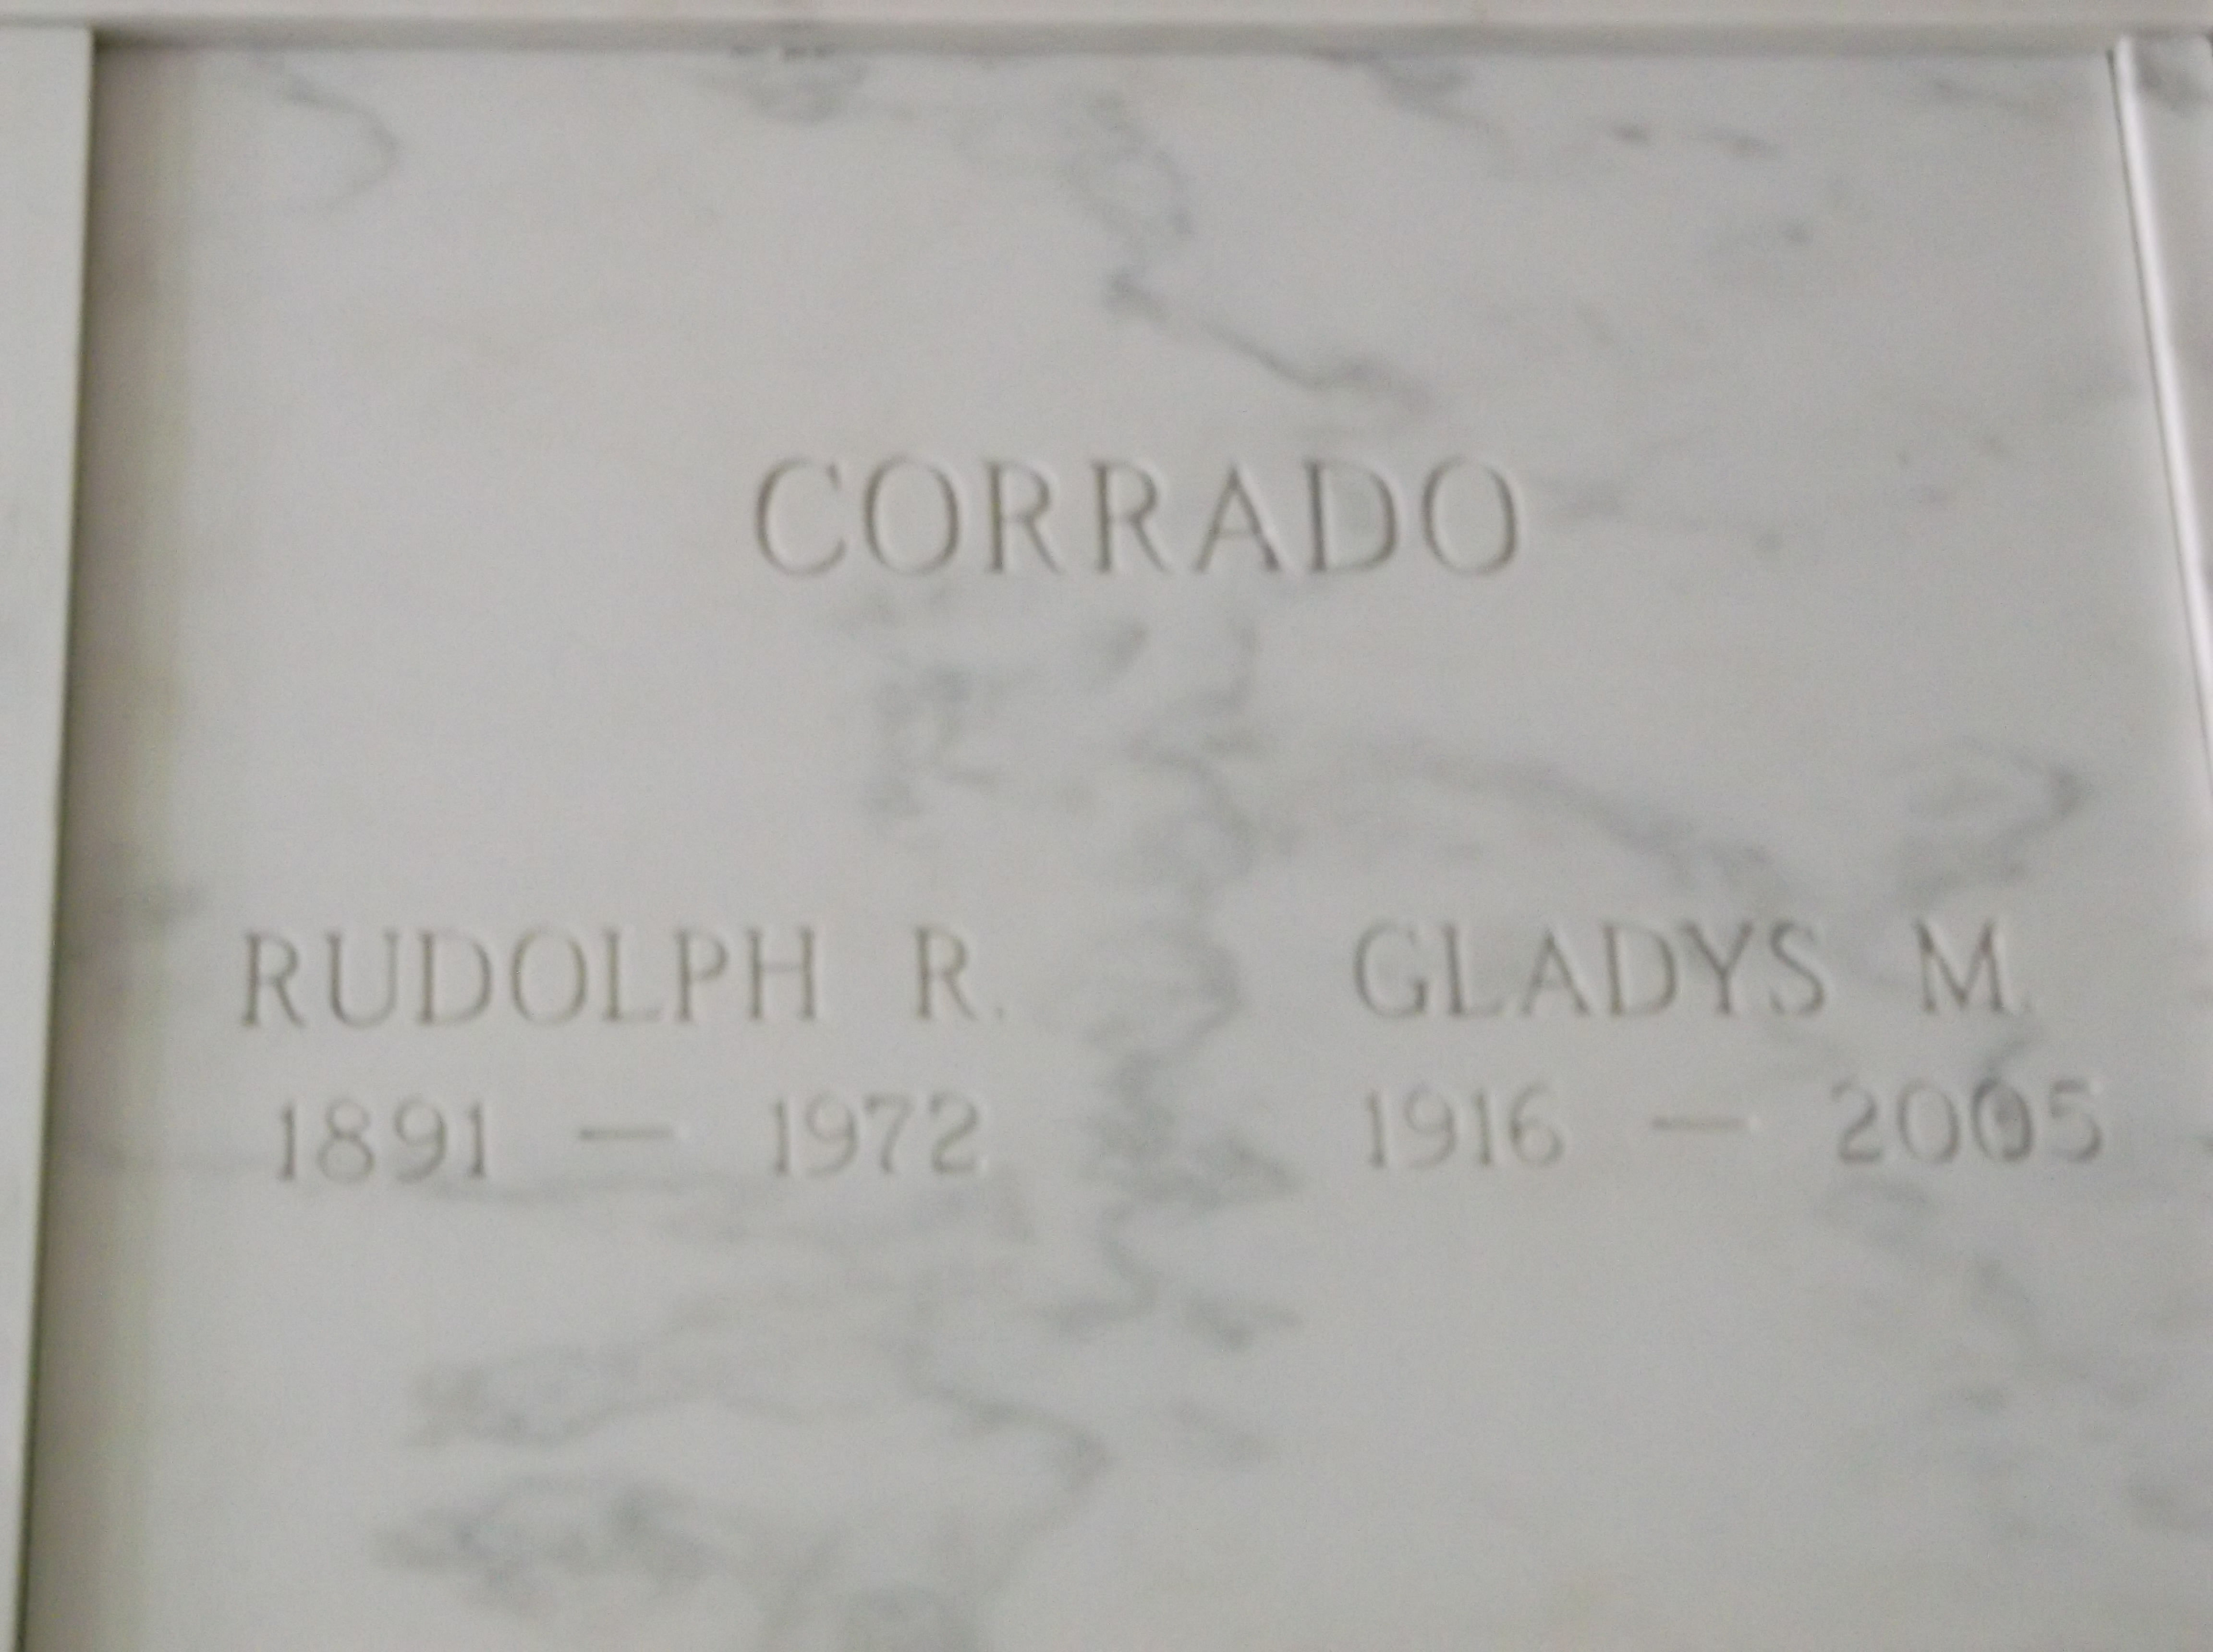 Rudolph R Corrado